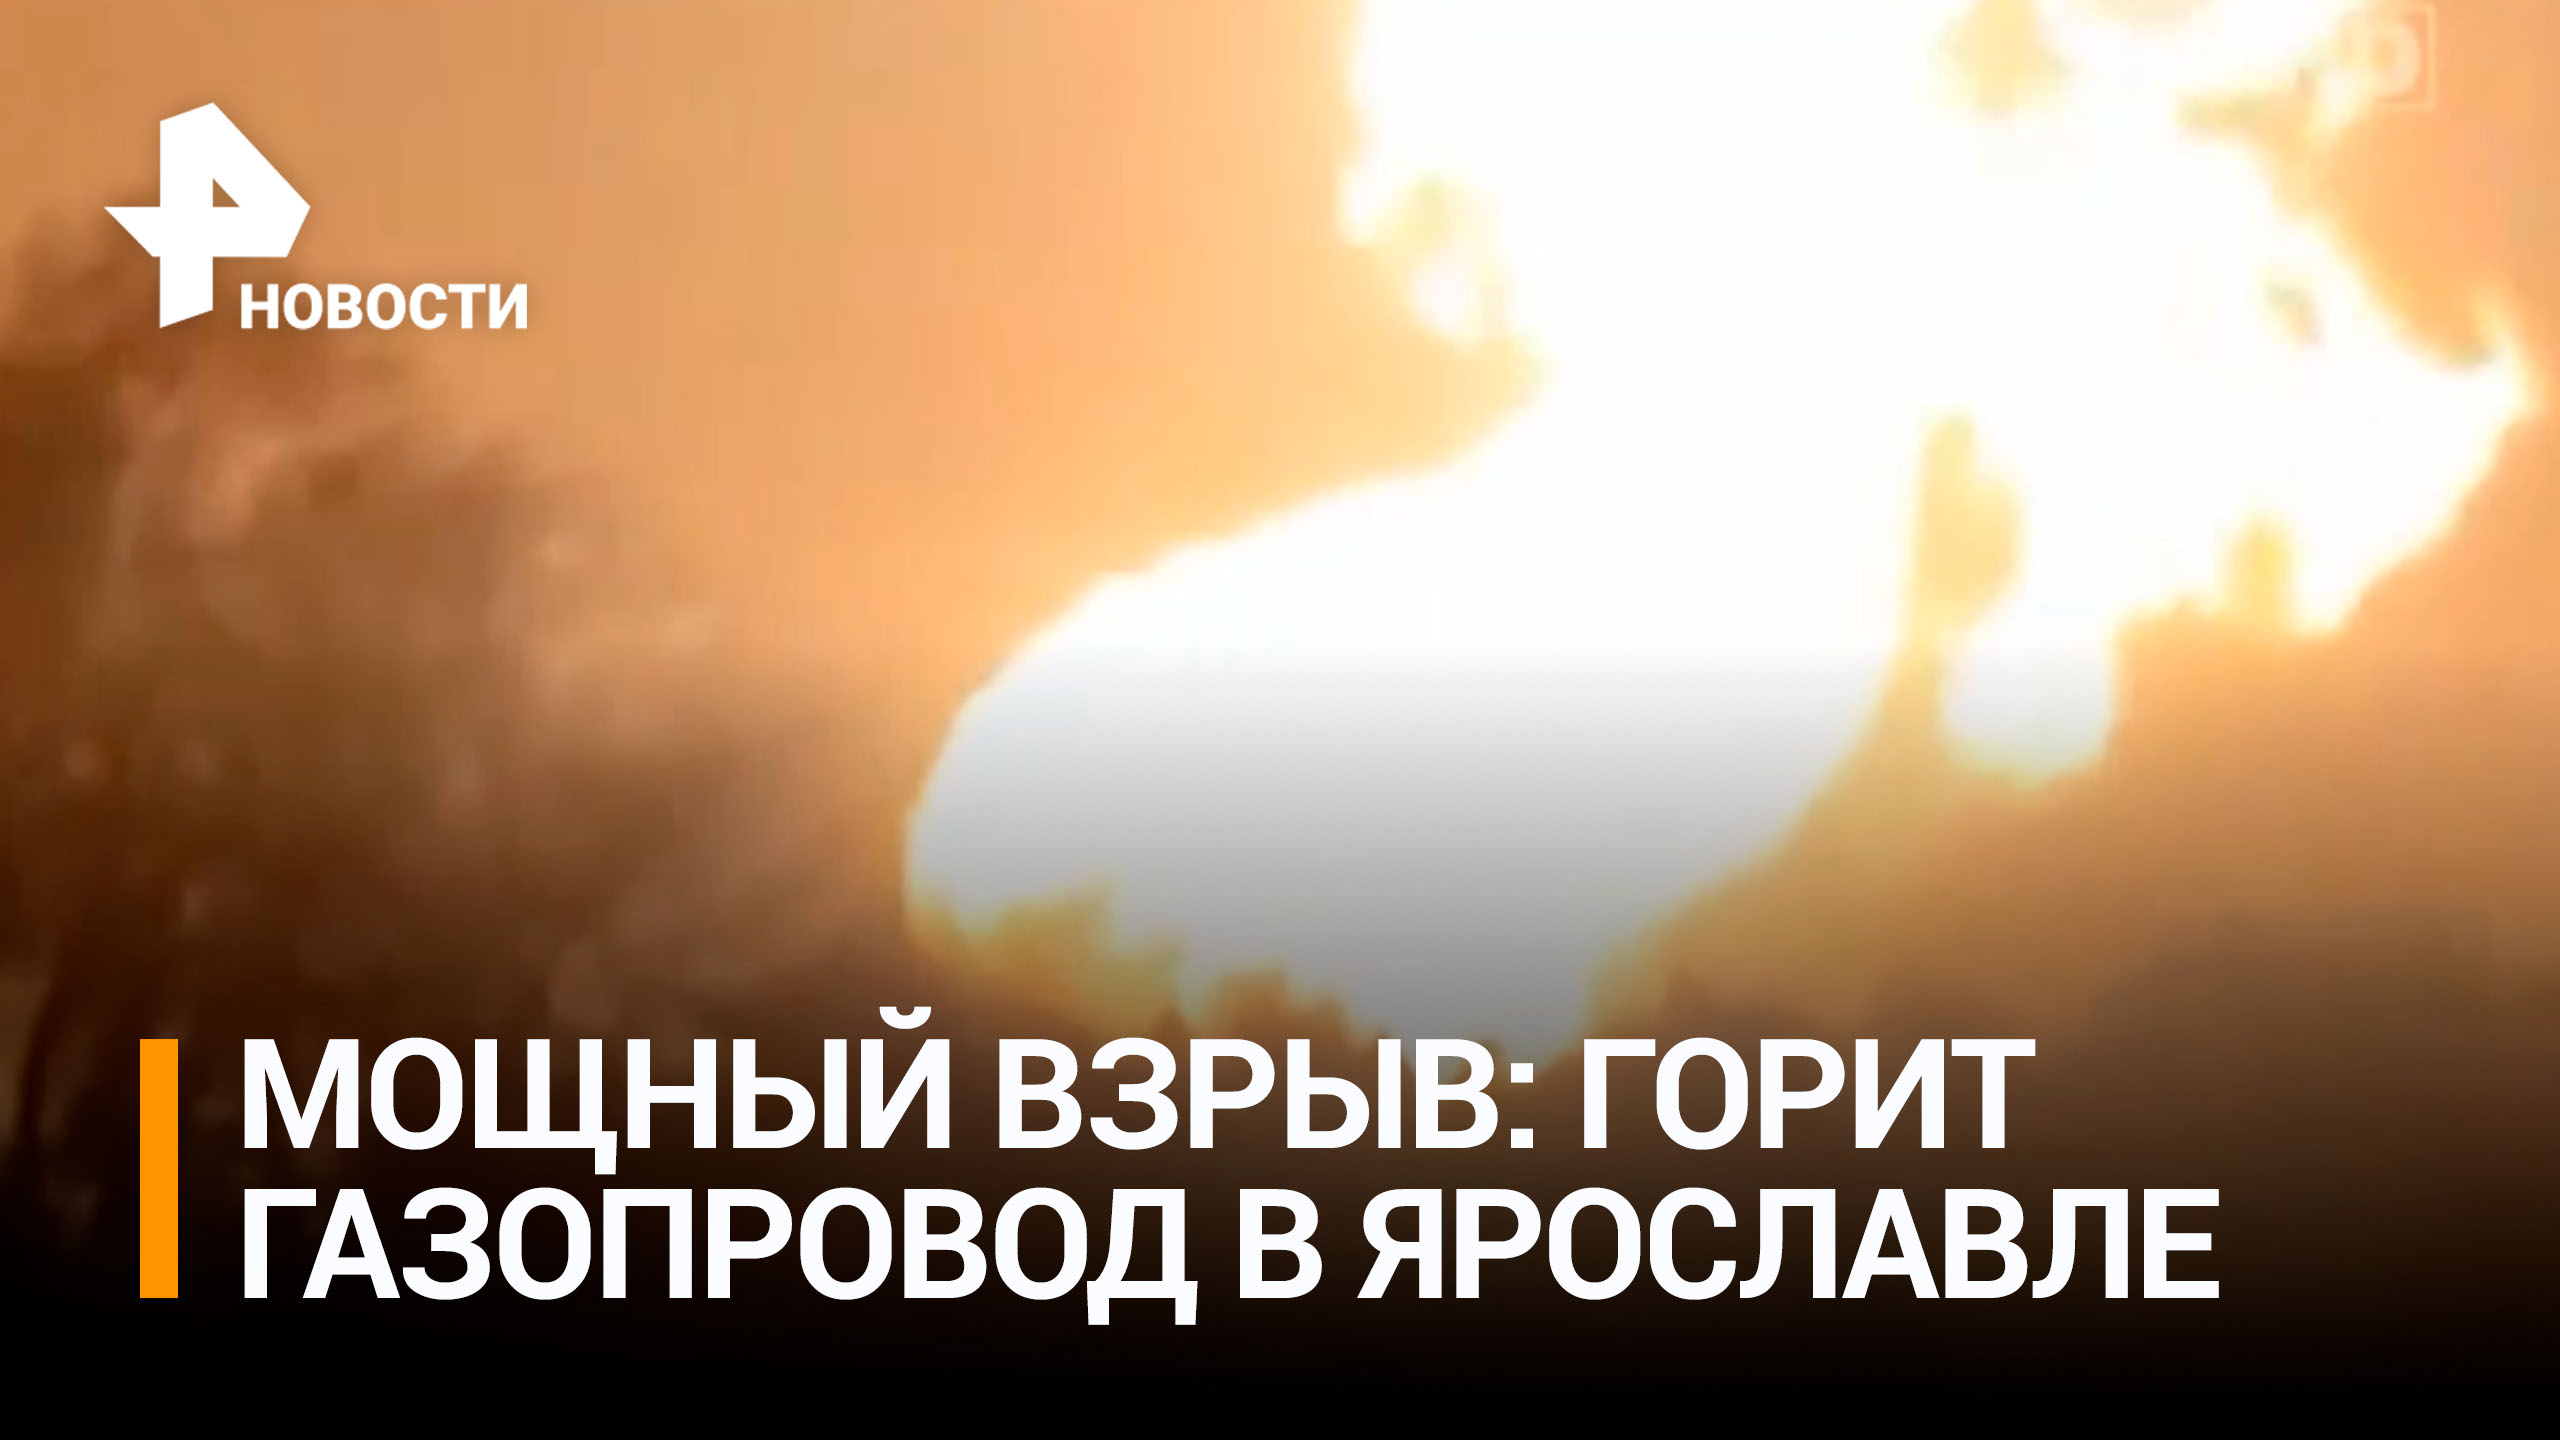 В Ярославской области произошел взрыв на газопроводе / РЕН Новости